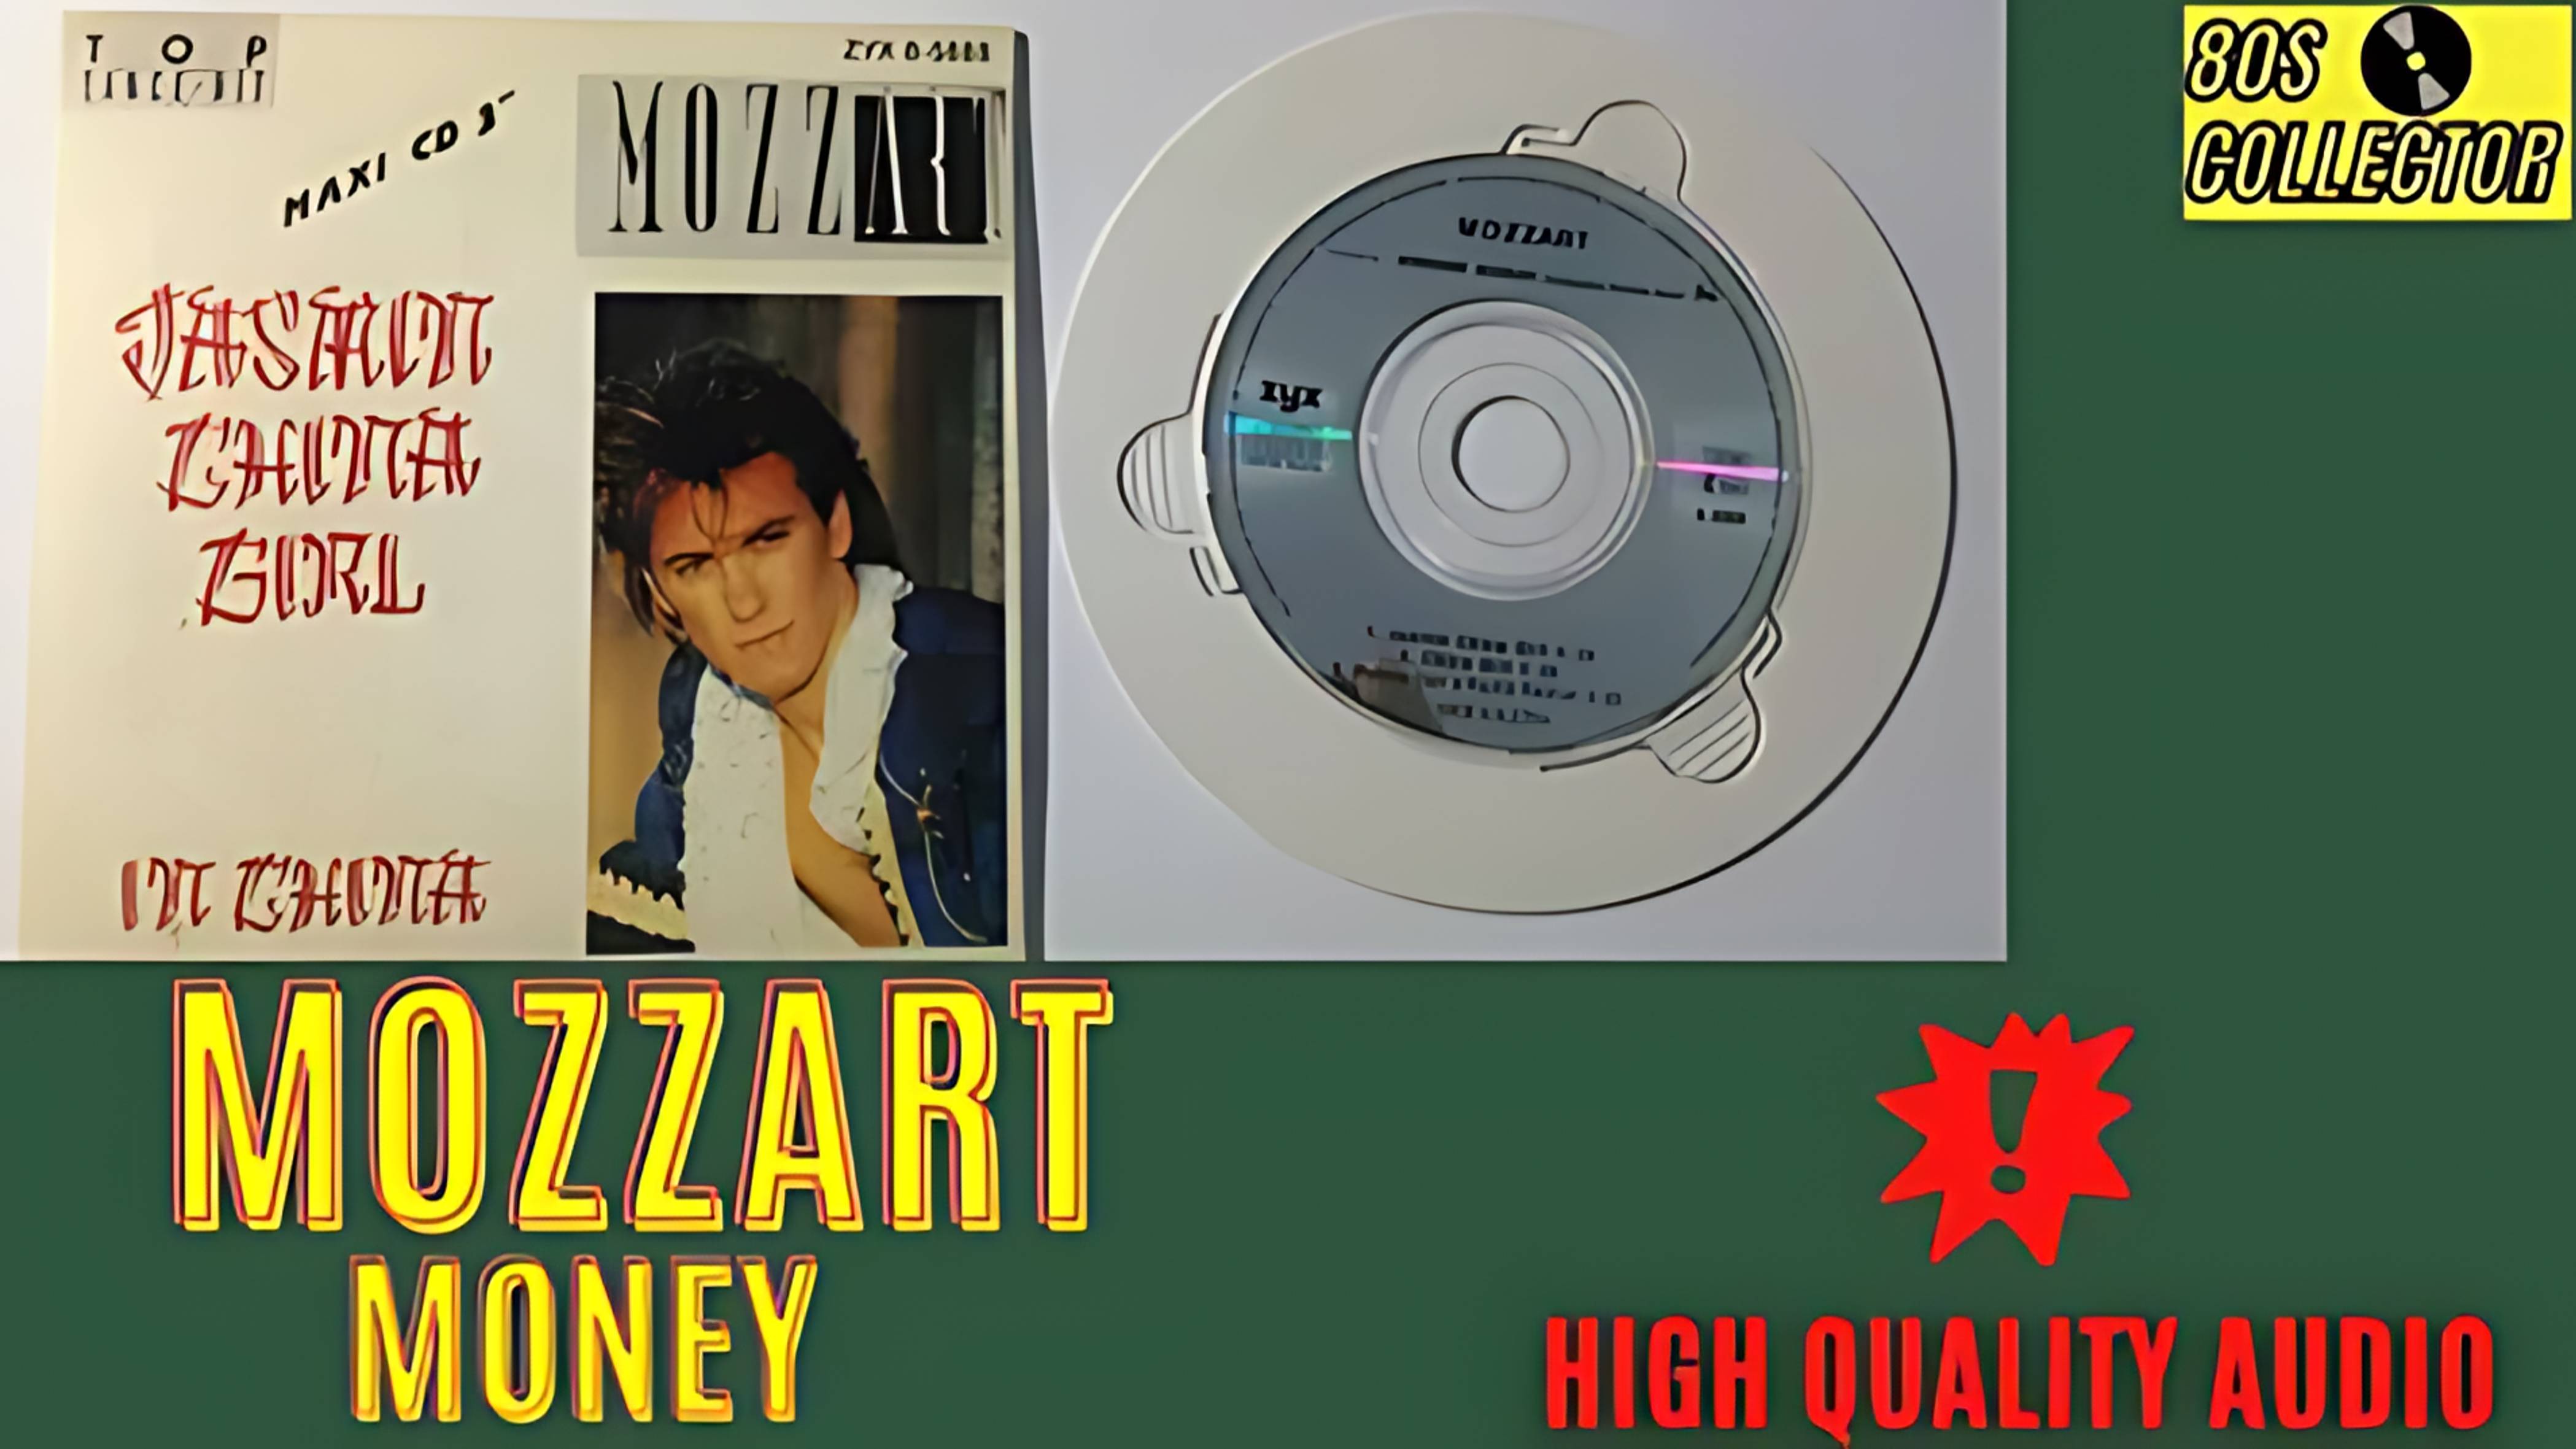 MOZZART Money maxi version 1988 (Ultra HD 4K)